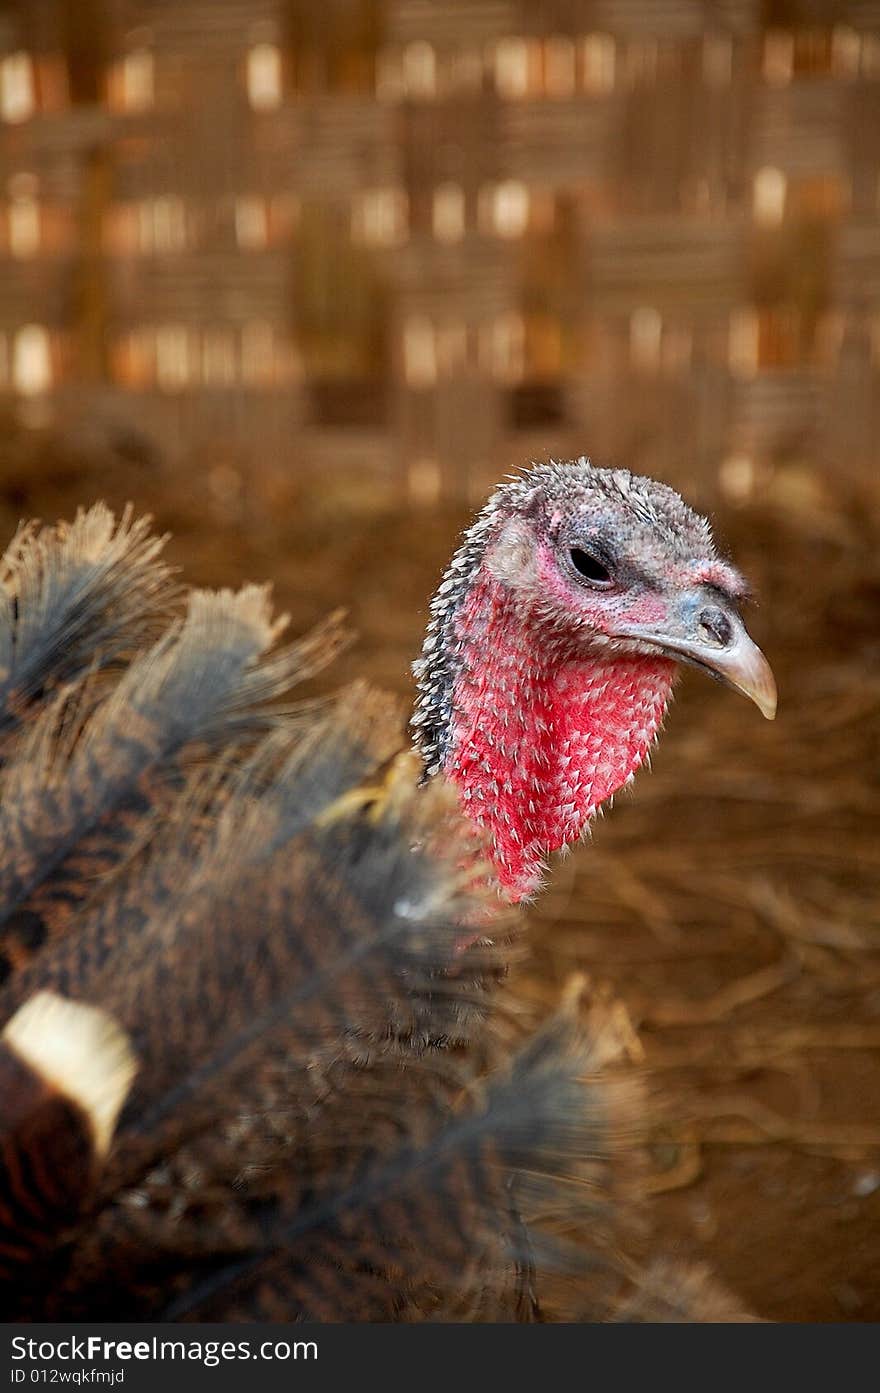 A close-up of a turkey,shot in peru. A close-up of a turkey,shot in peru